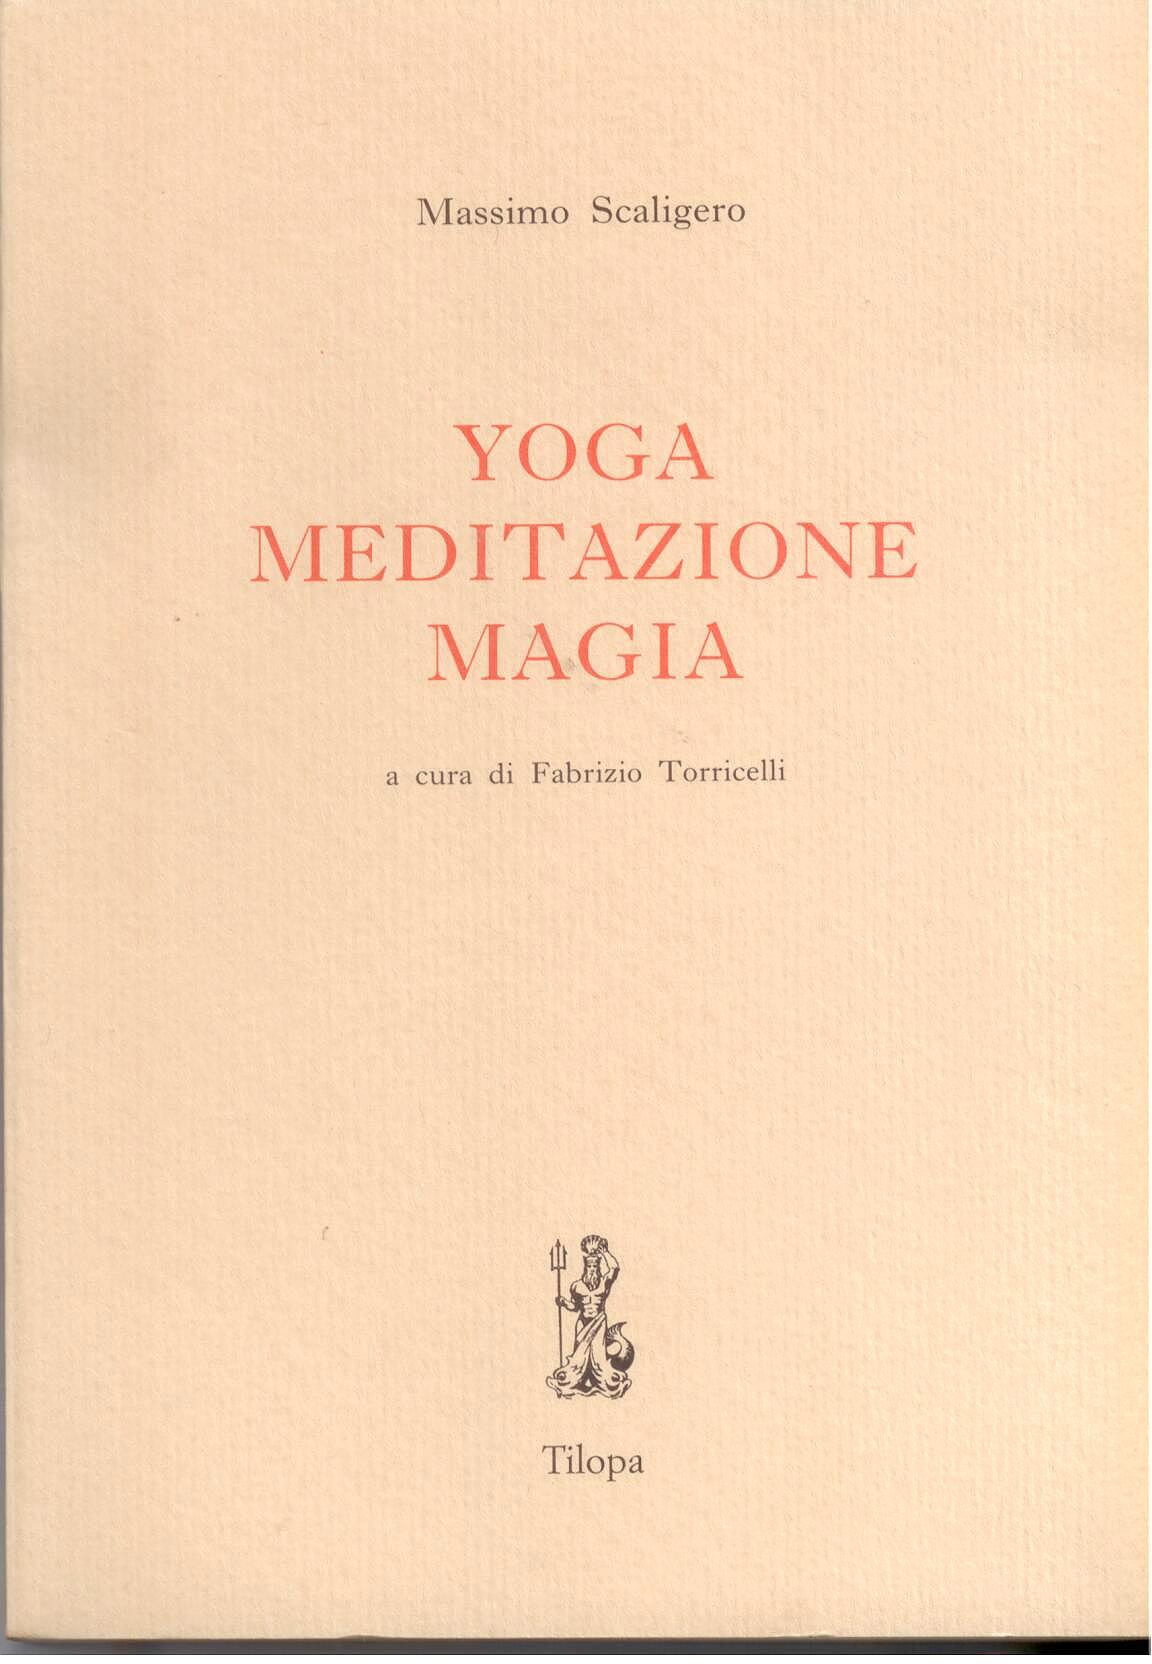 Yoga, Meditazione, Magia - Massimo Scaligero